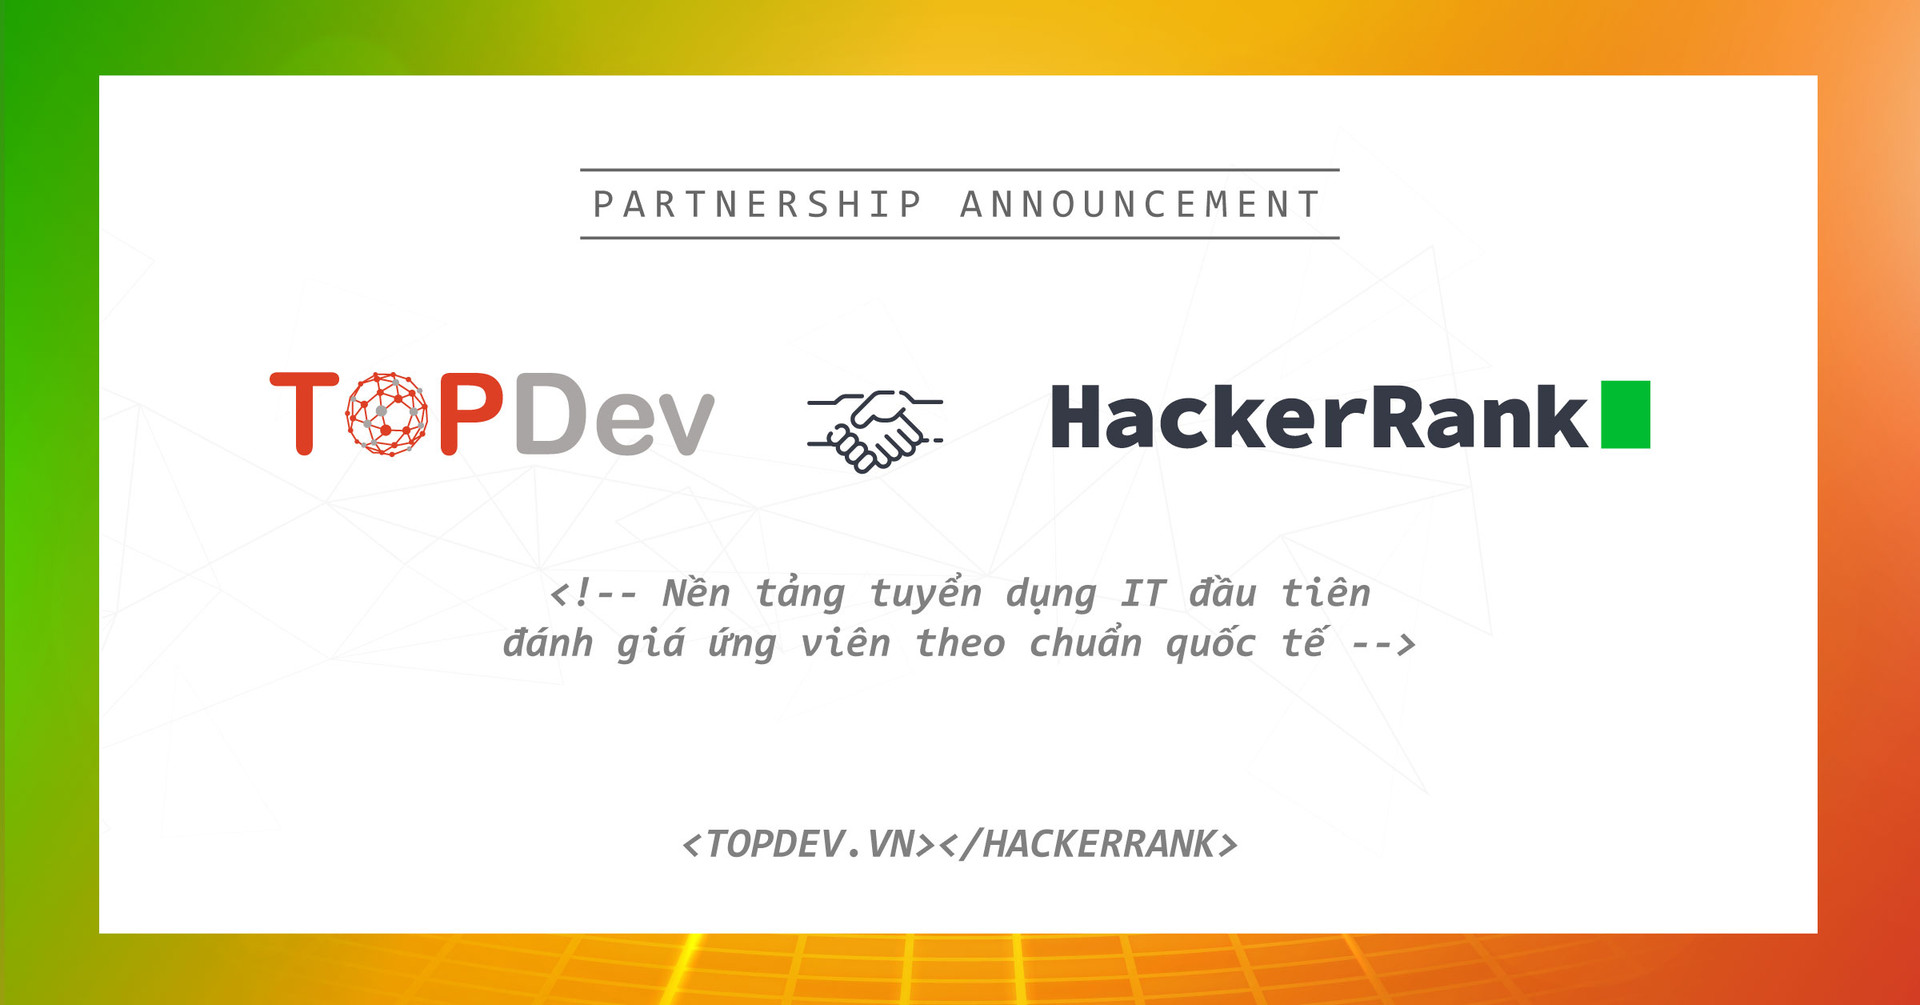 TopDev & HackerRank, bộ đôi hợp nhất nhân sức mạnh kênh tuyển dụng IT - Ảnh 3.